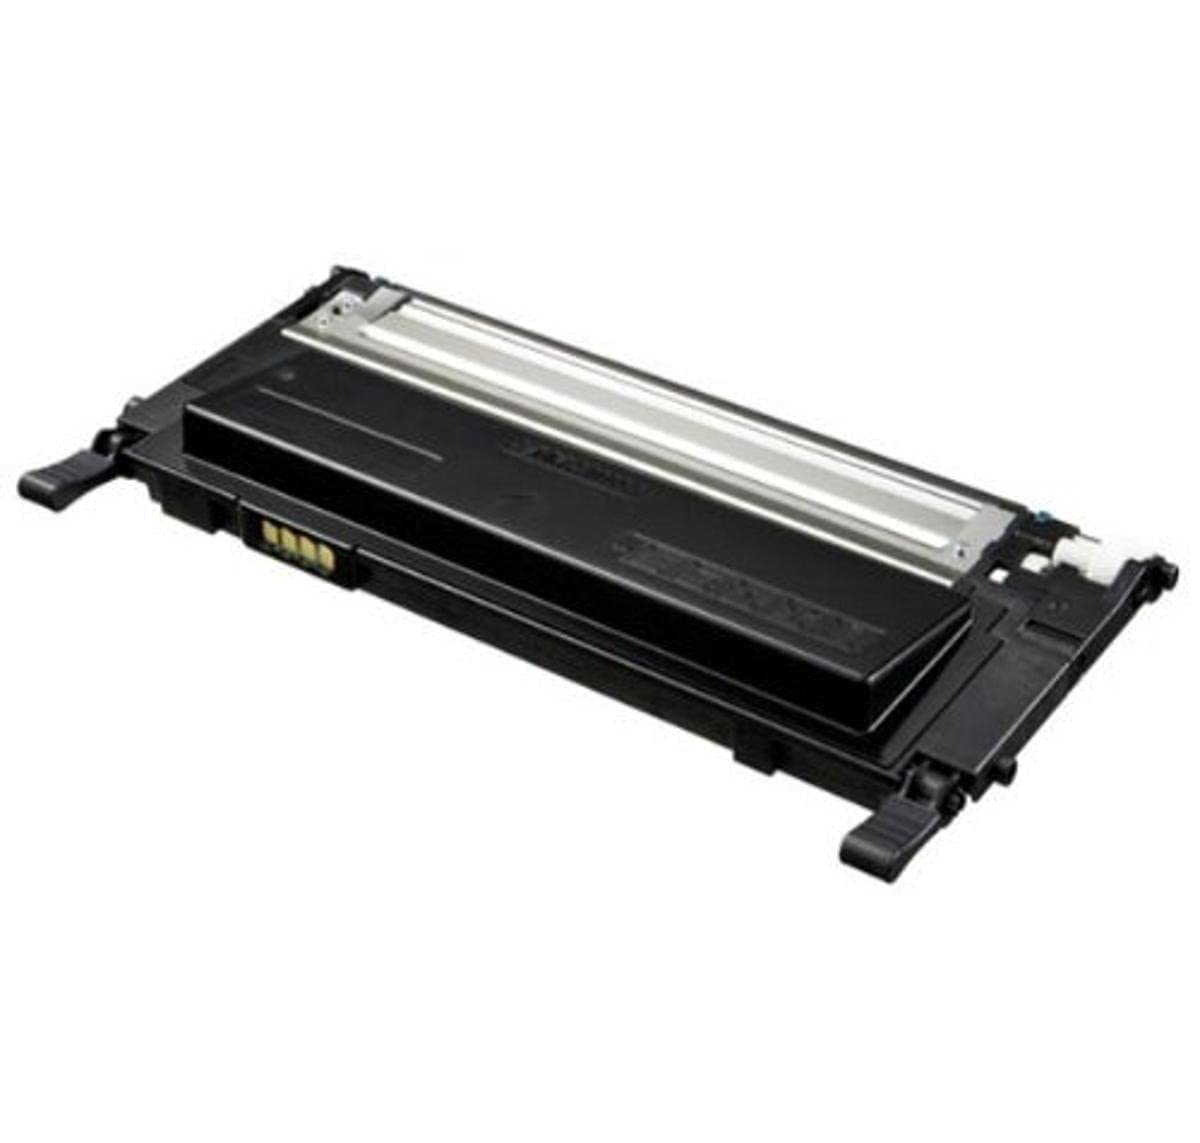 Samsung CLT-K4092S/ELS Original Toner für Laserdrucker CLP 310" schwarz